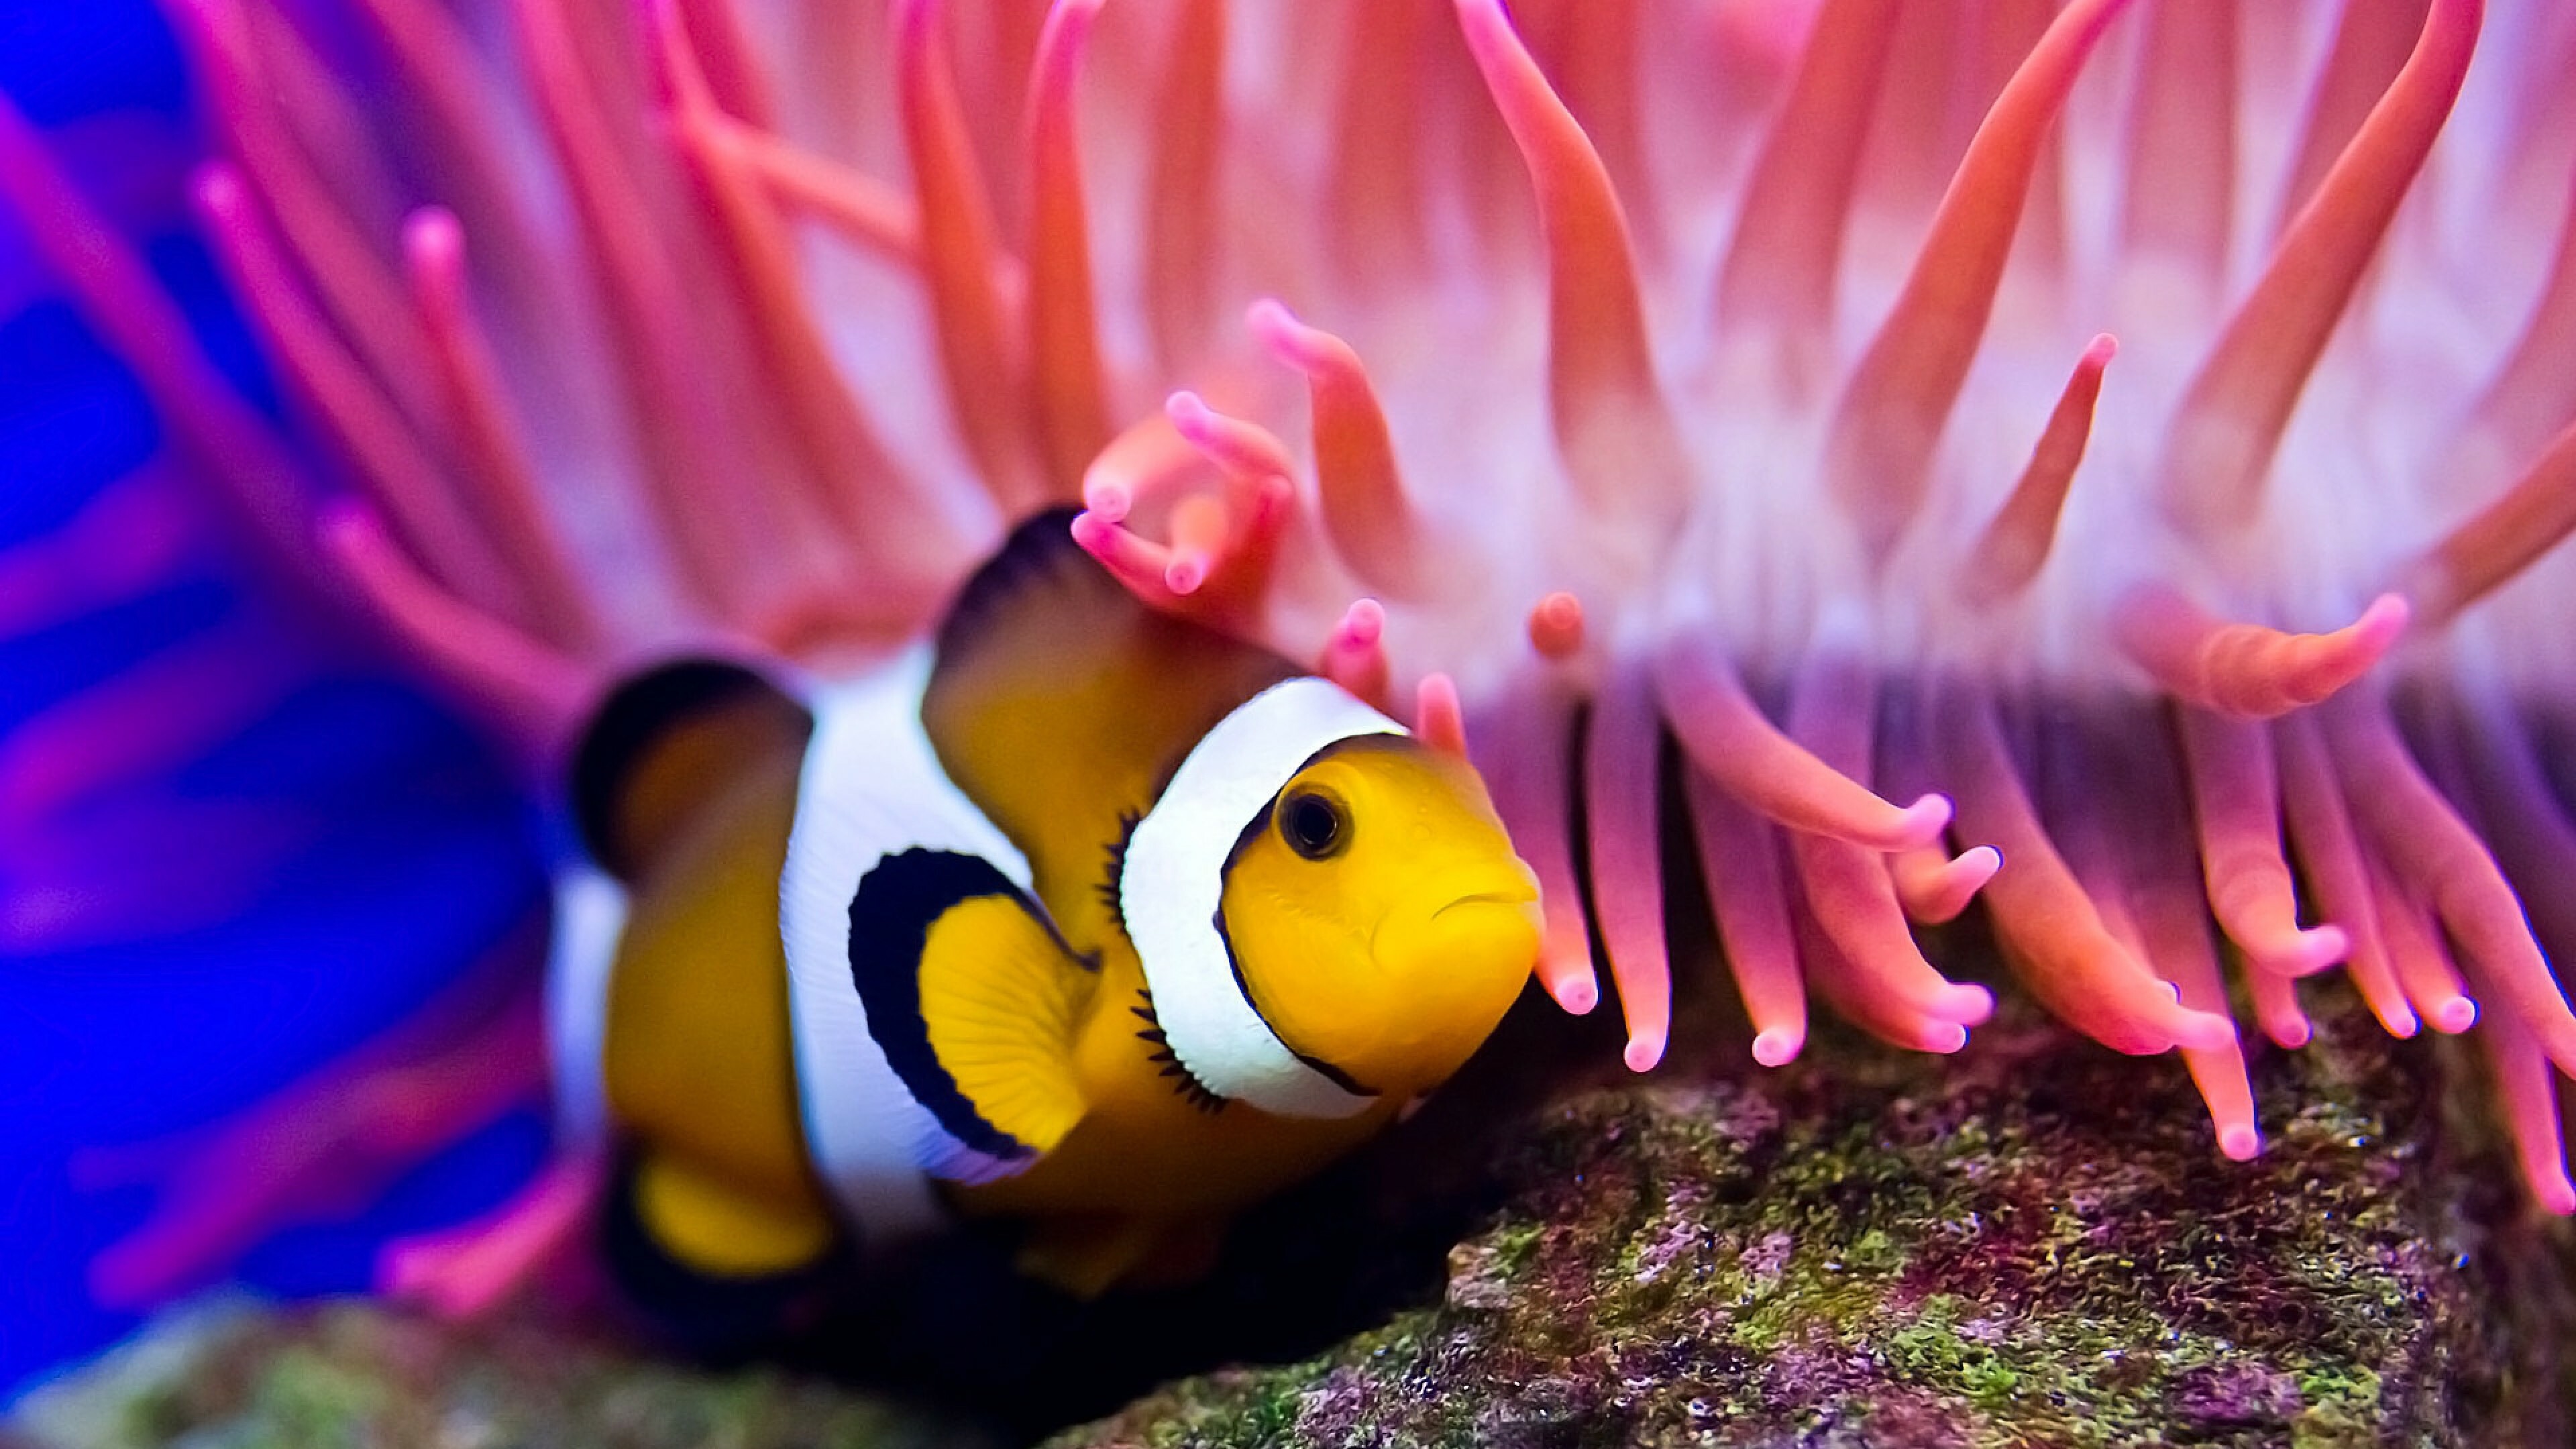 Finding Nemo clown fish, iPad Pro wallpaper, Zeeoii sealife, Underwater adventure, 3840x2160 4K Desktop